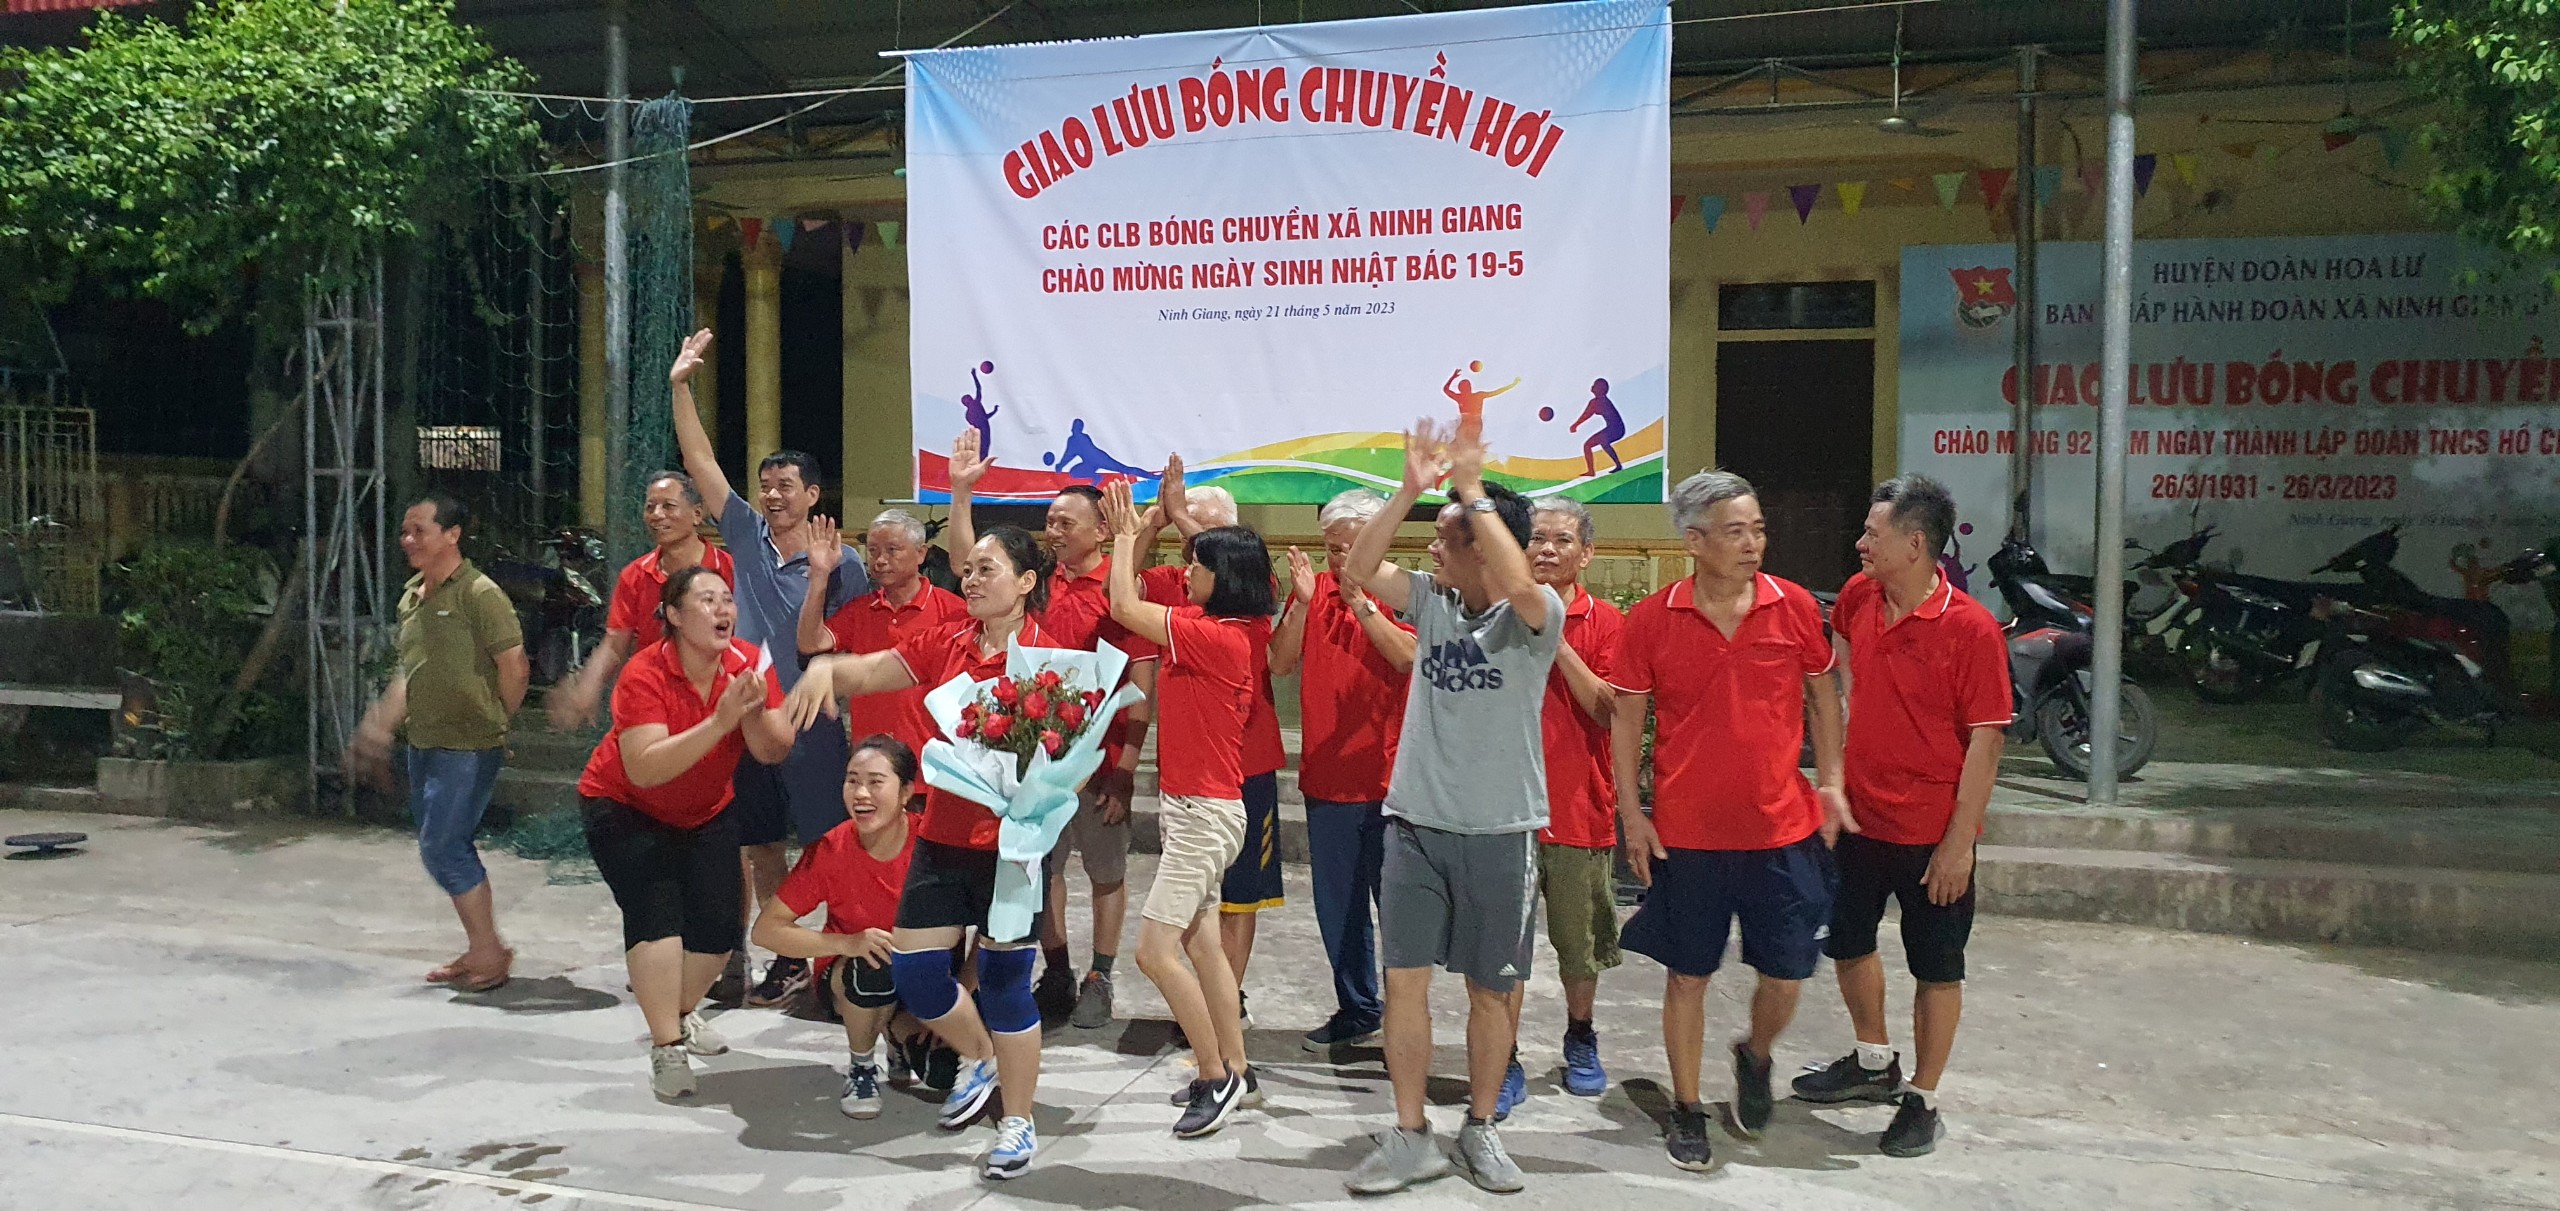 Ban văn hóa làng La Mai tổ chức giao hữu bóng chuyền hơi các CLB xã Ninh Giang